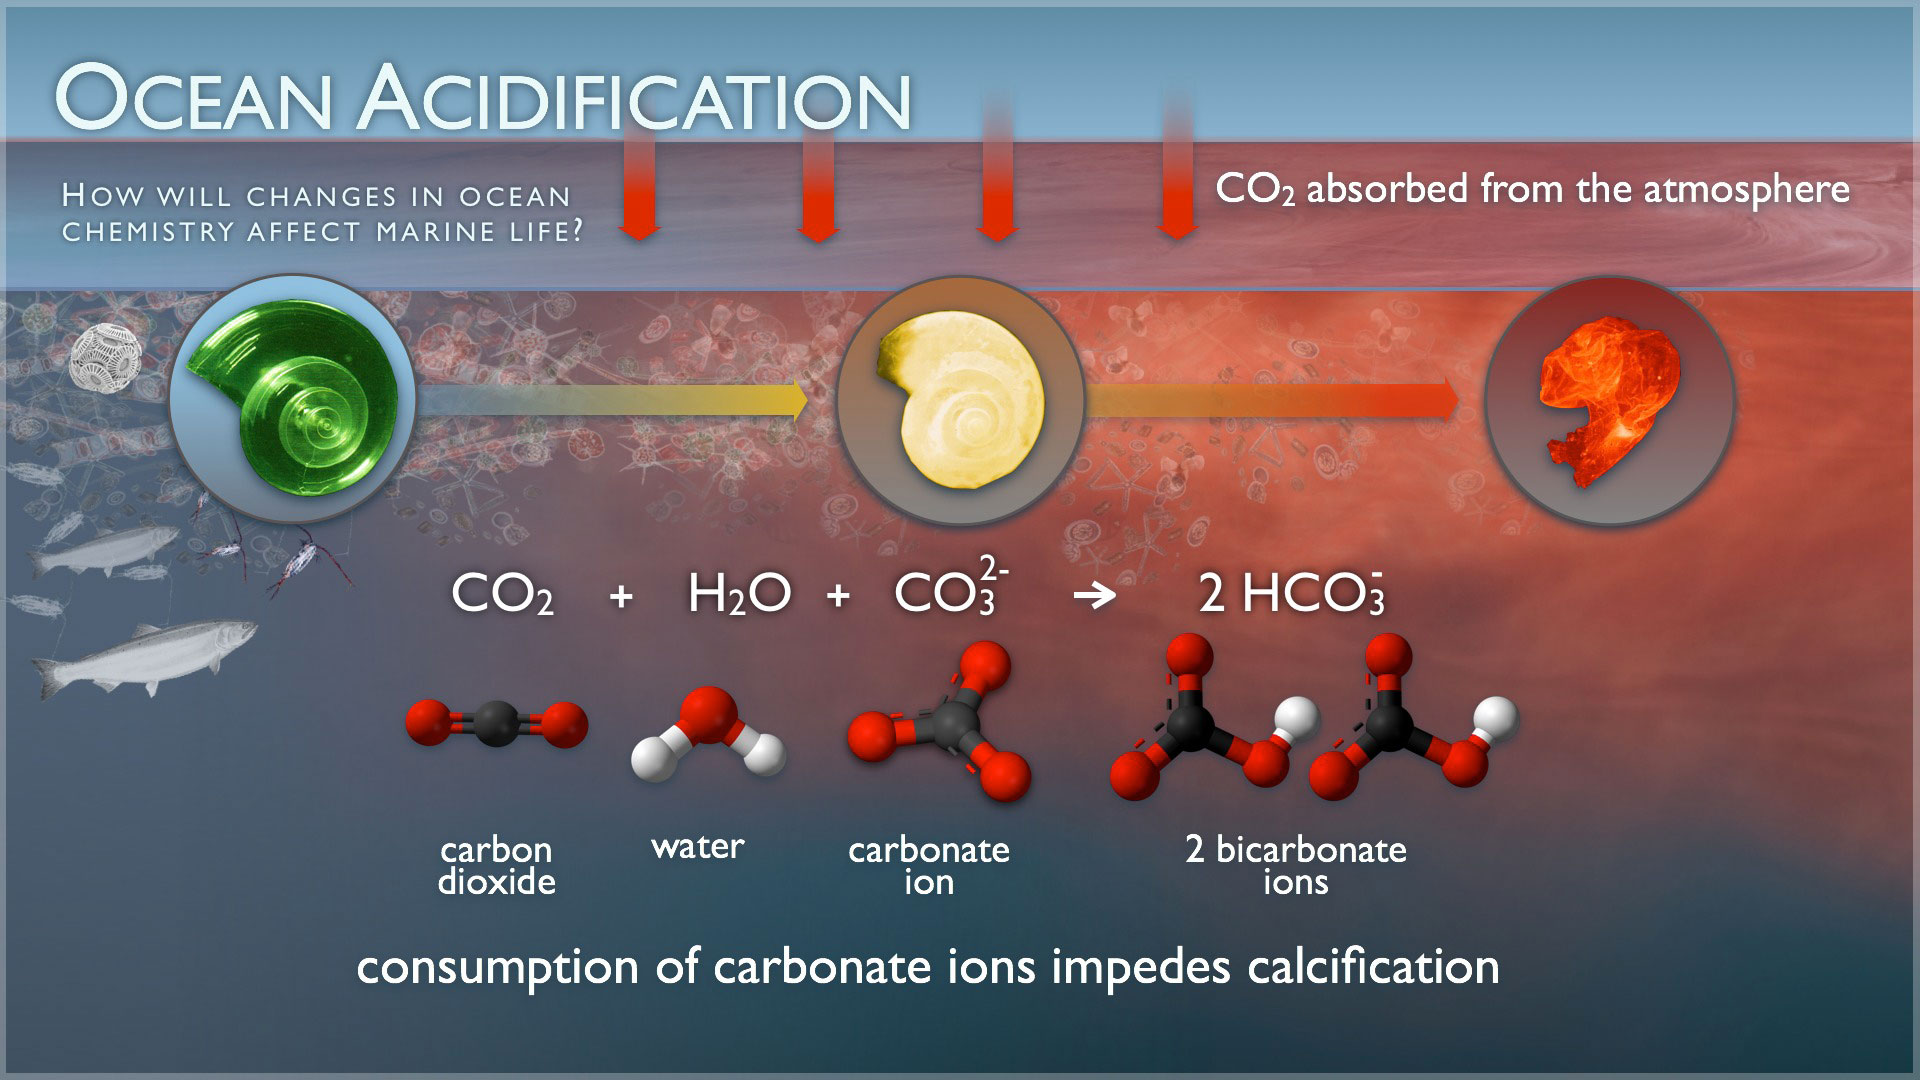 Source: NOAA - http://www.pmel.noaa.gov/co2/story/Ocean+Acidification